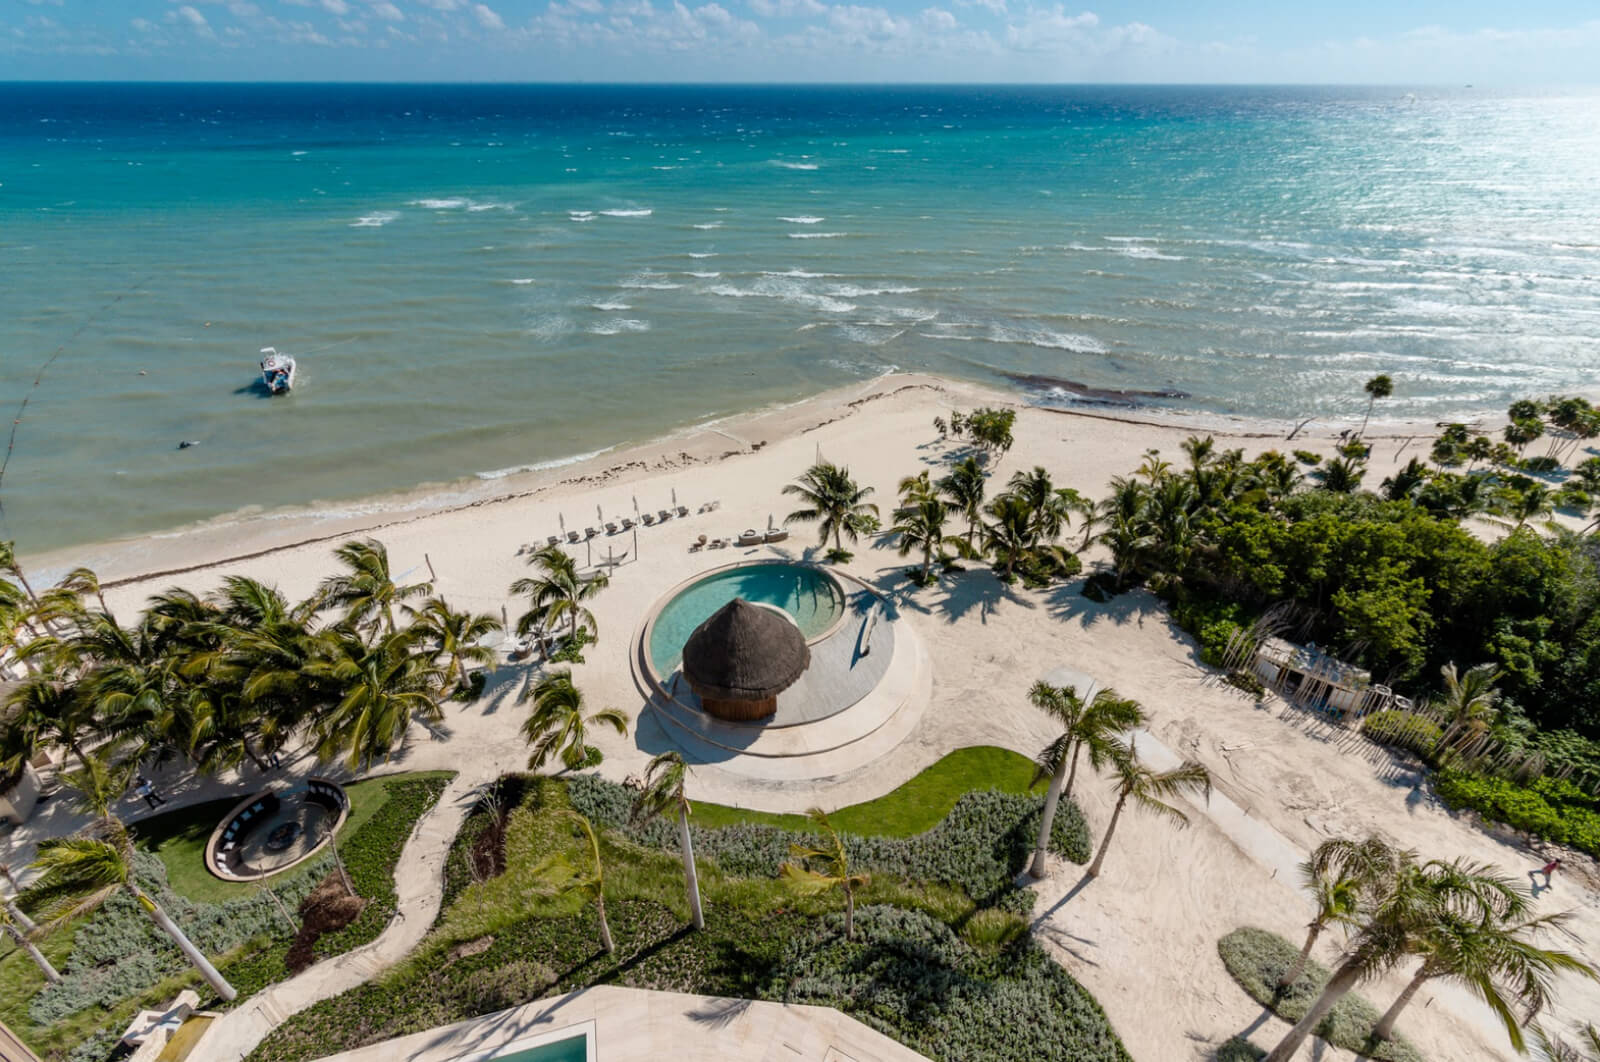 Departamento de lujo con club de playa, campo de golf y amenidades de hotel, en venta Playa del Carmen.